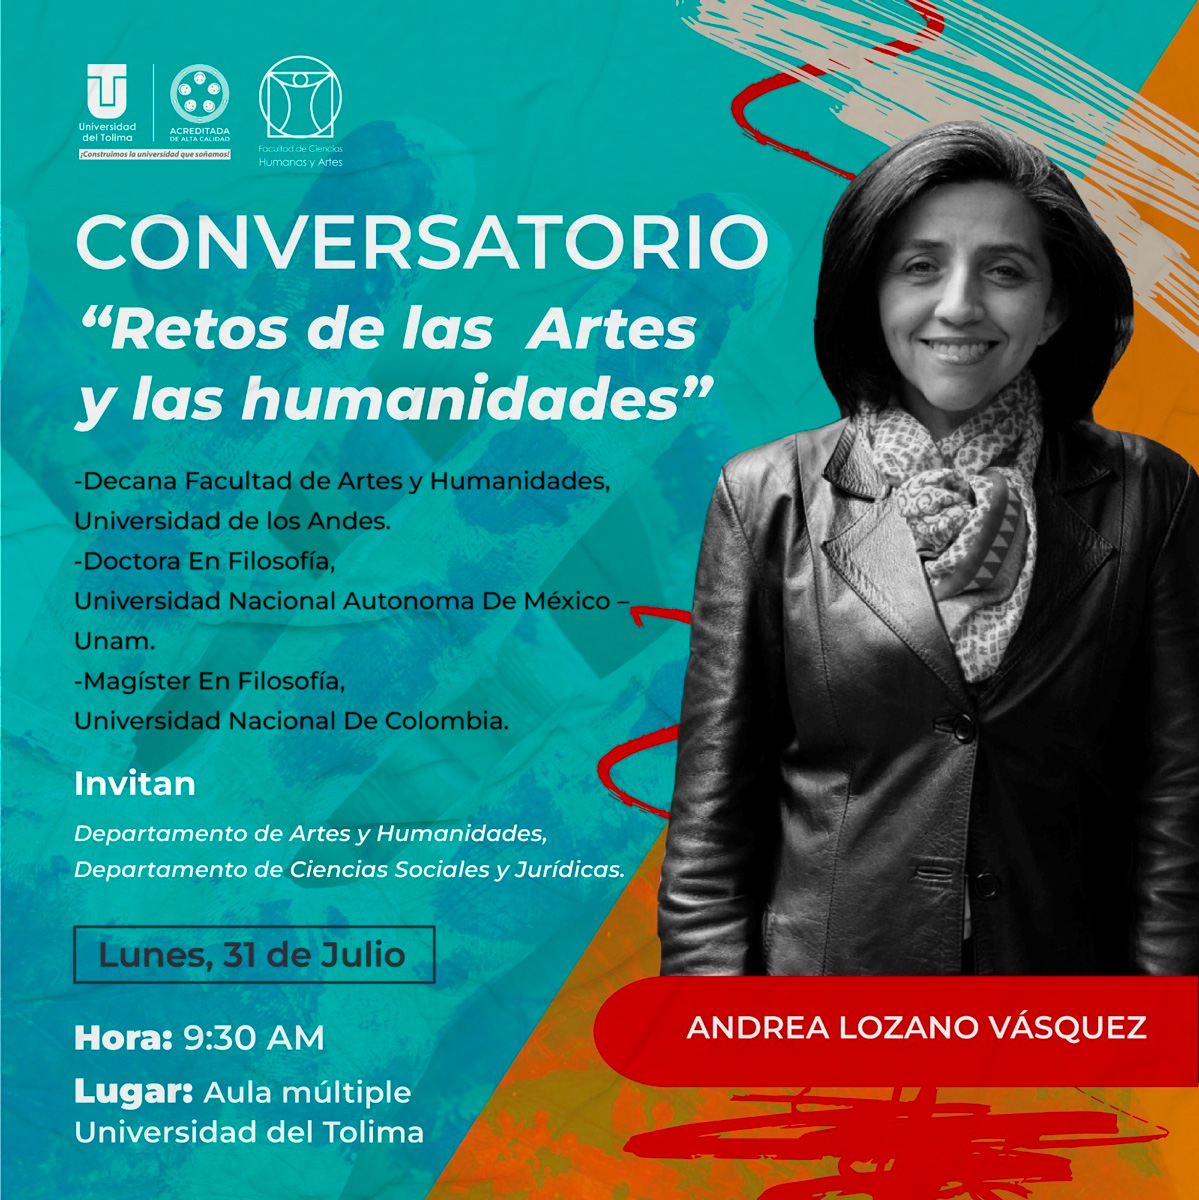 Conversatorio: Retos de las Artes y las humanidades con Andrea Lozano, decana de la facultad de Artes y Humanidades de la Universidad de los Andes